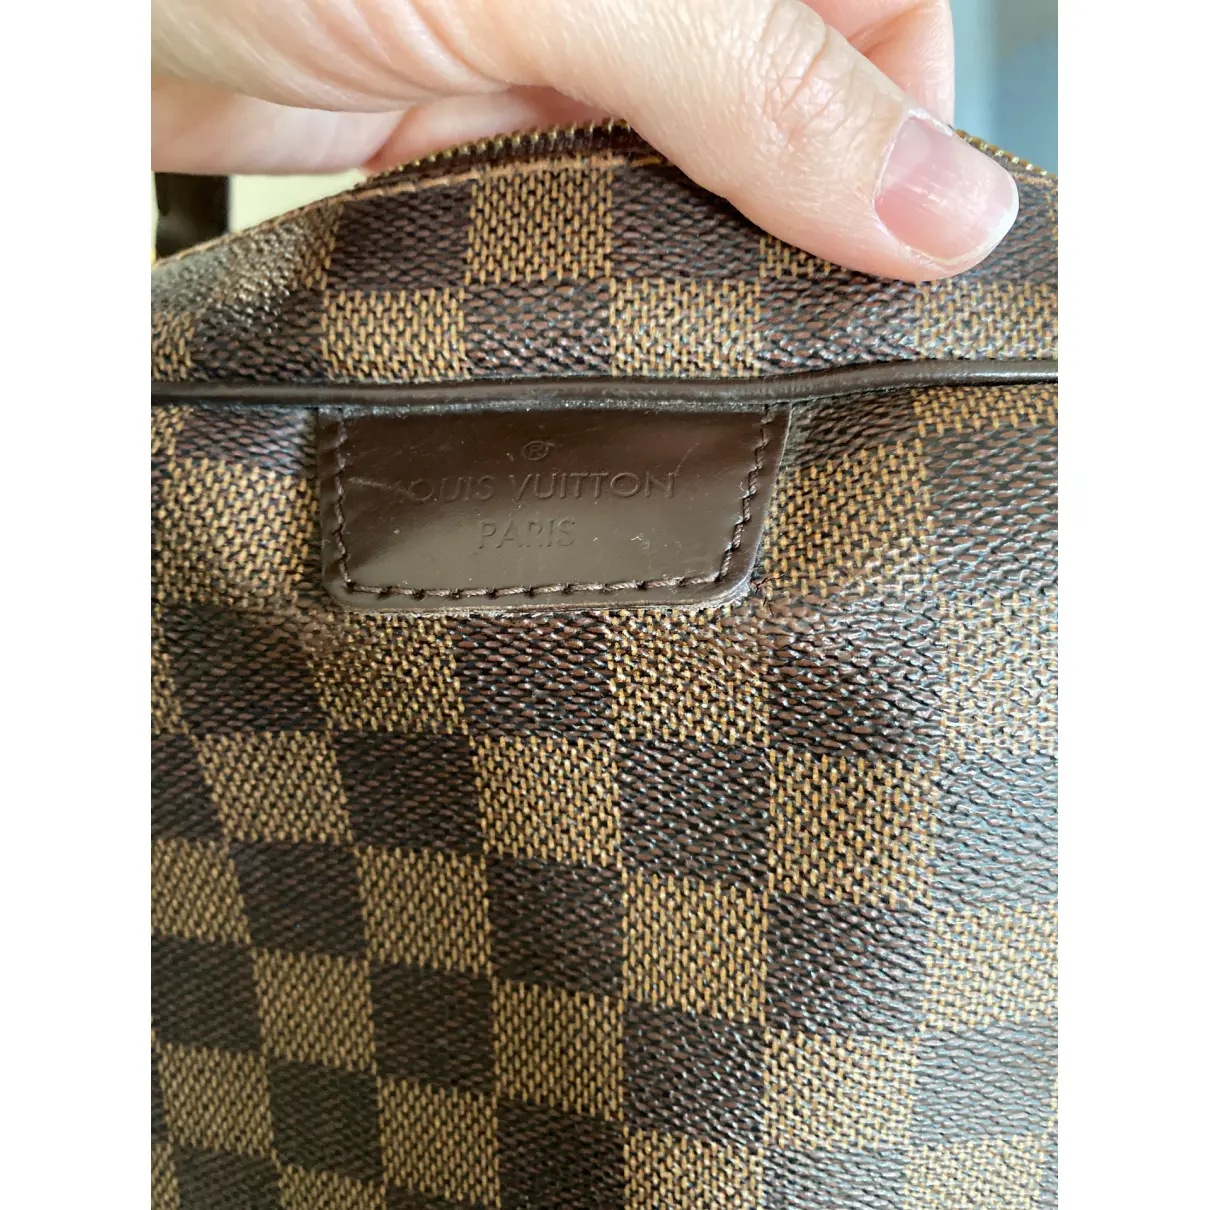 Buy Louis Vuitton Rivington leather handbag online